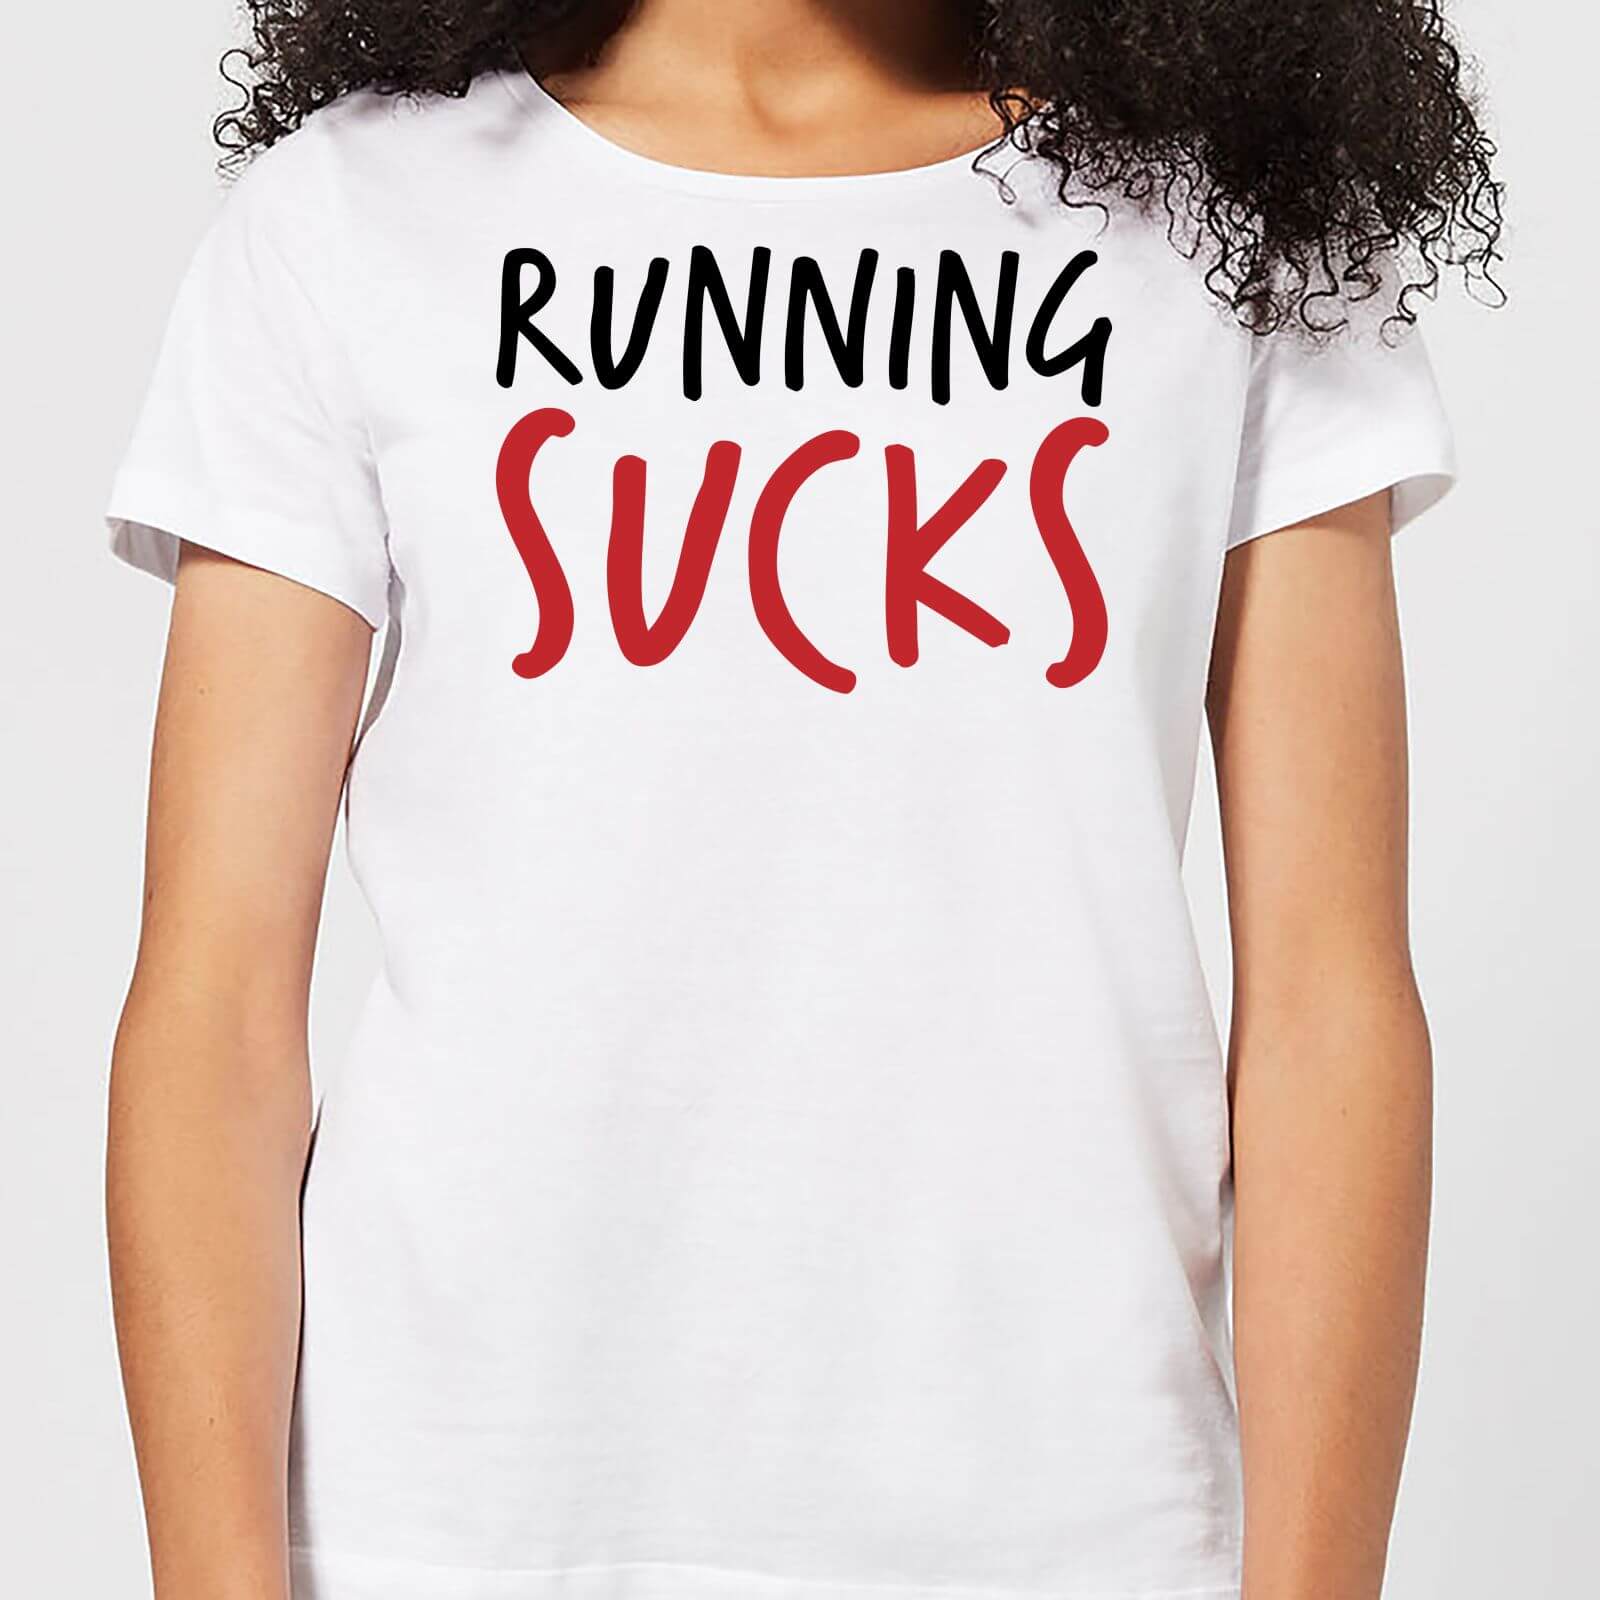 Running Sucks Women's T-Shirt - White - XXL - White